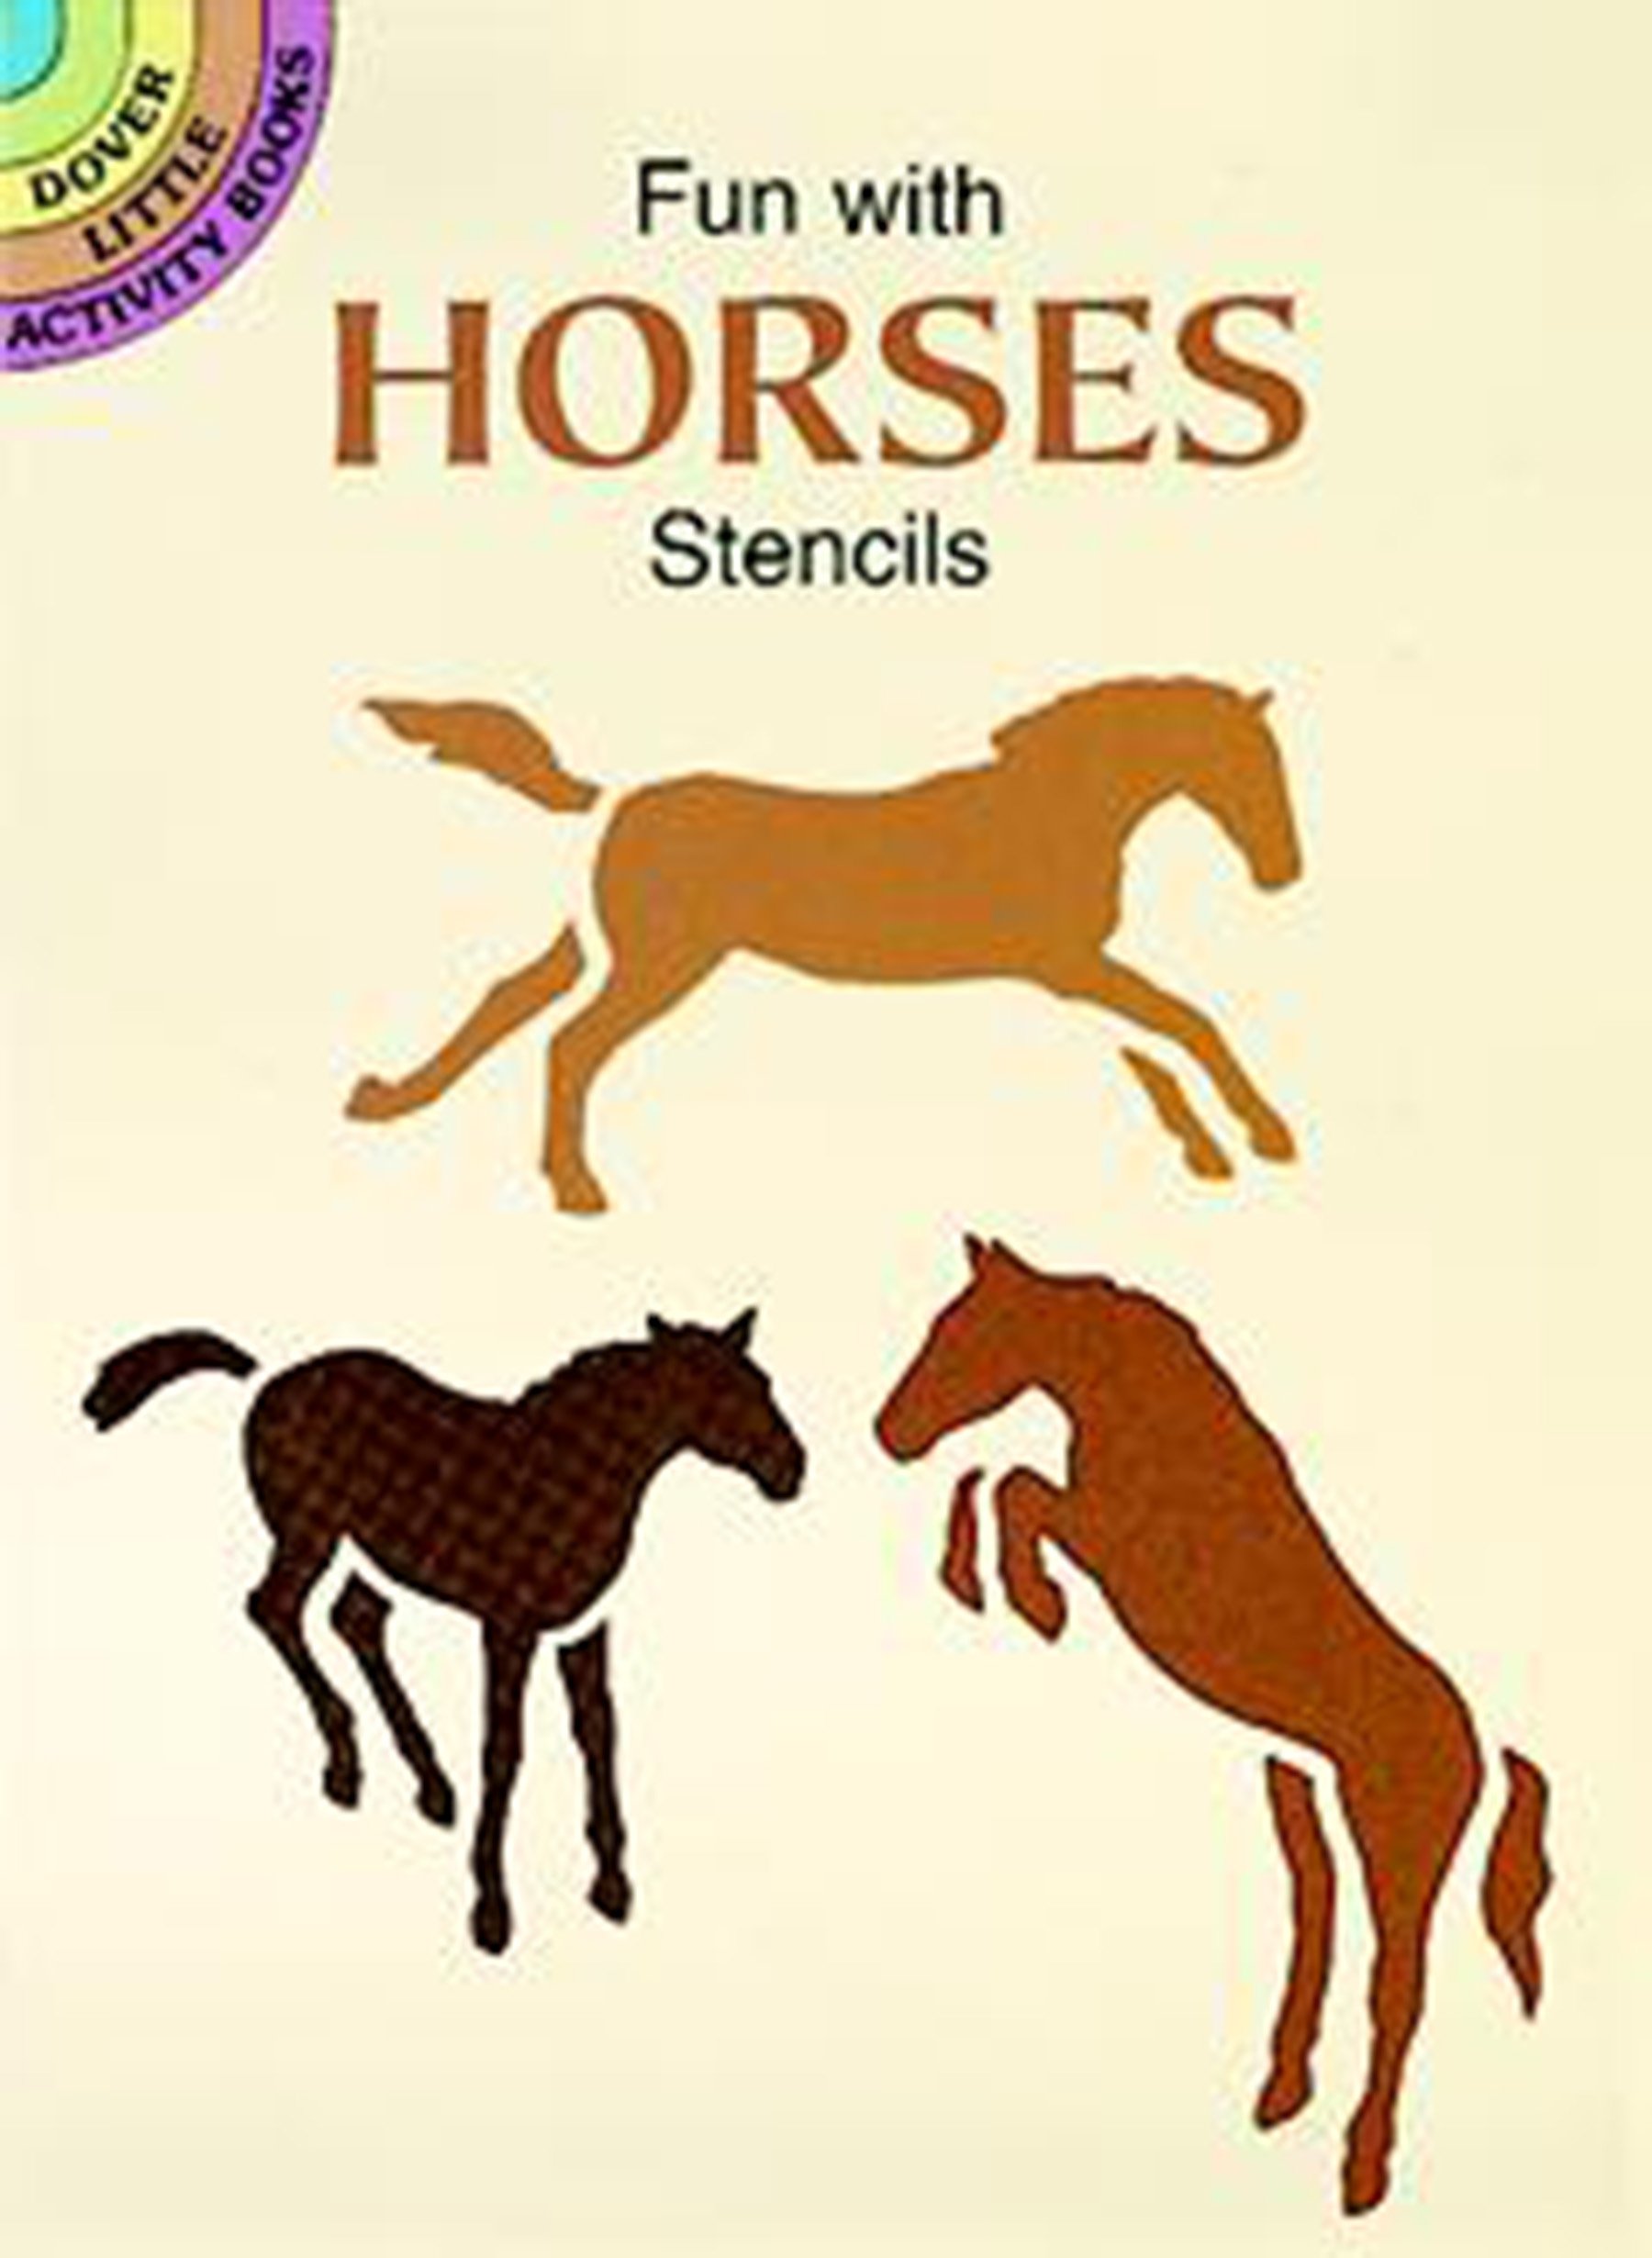 Fun with Horses Stencils (Dover Stencils)